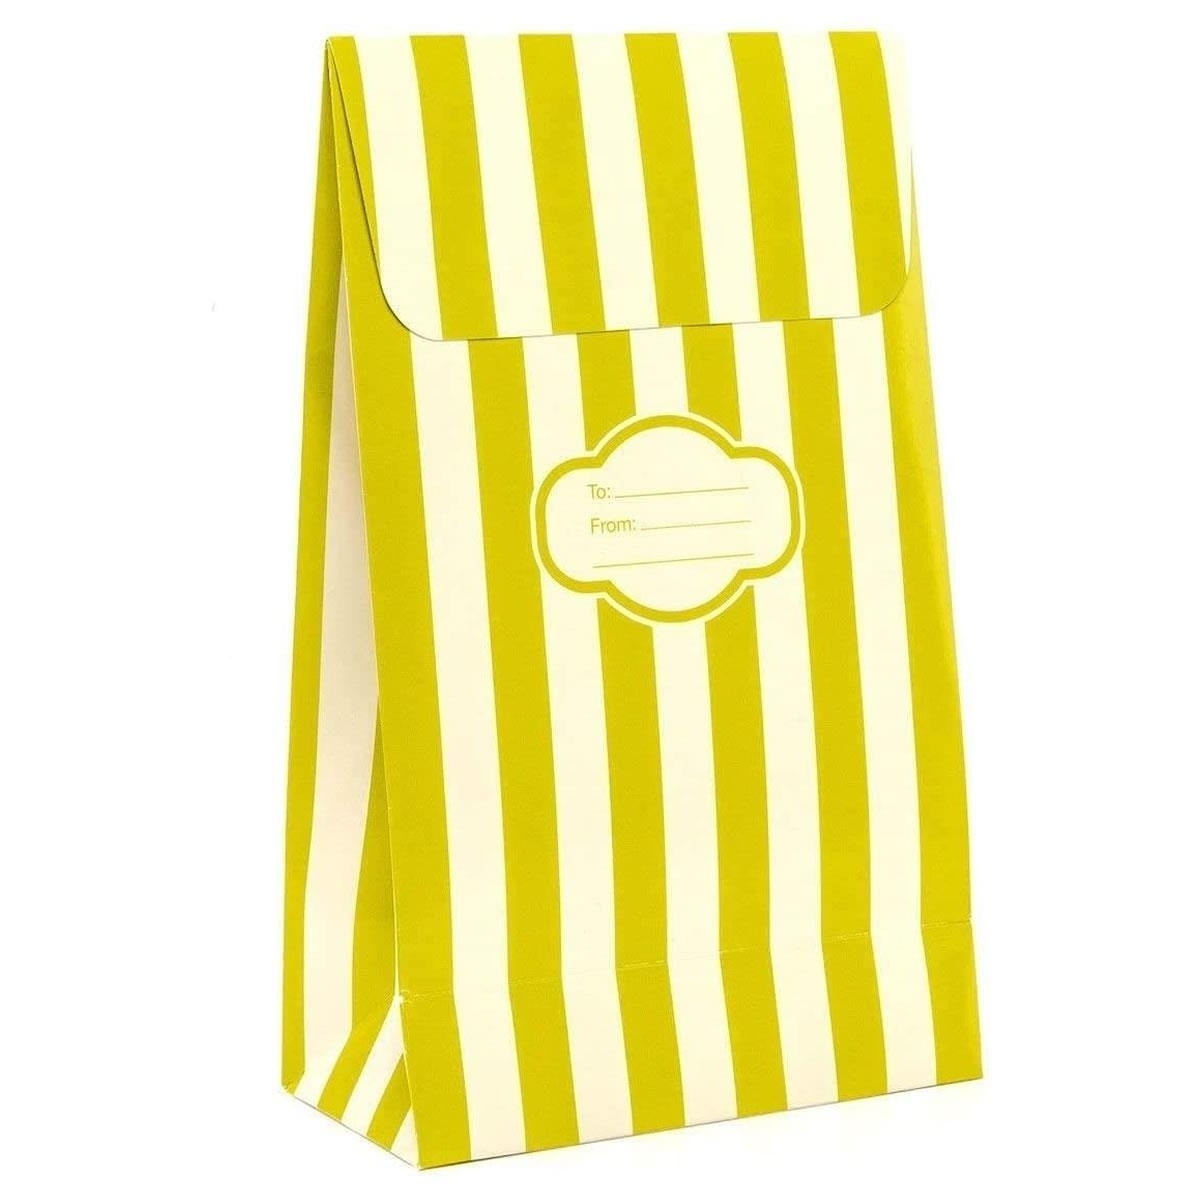 Pressie Pouch Peel & Seal Gift Bag Green Stripe 12pk Small No-Wrap